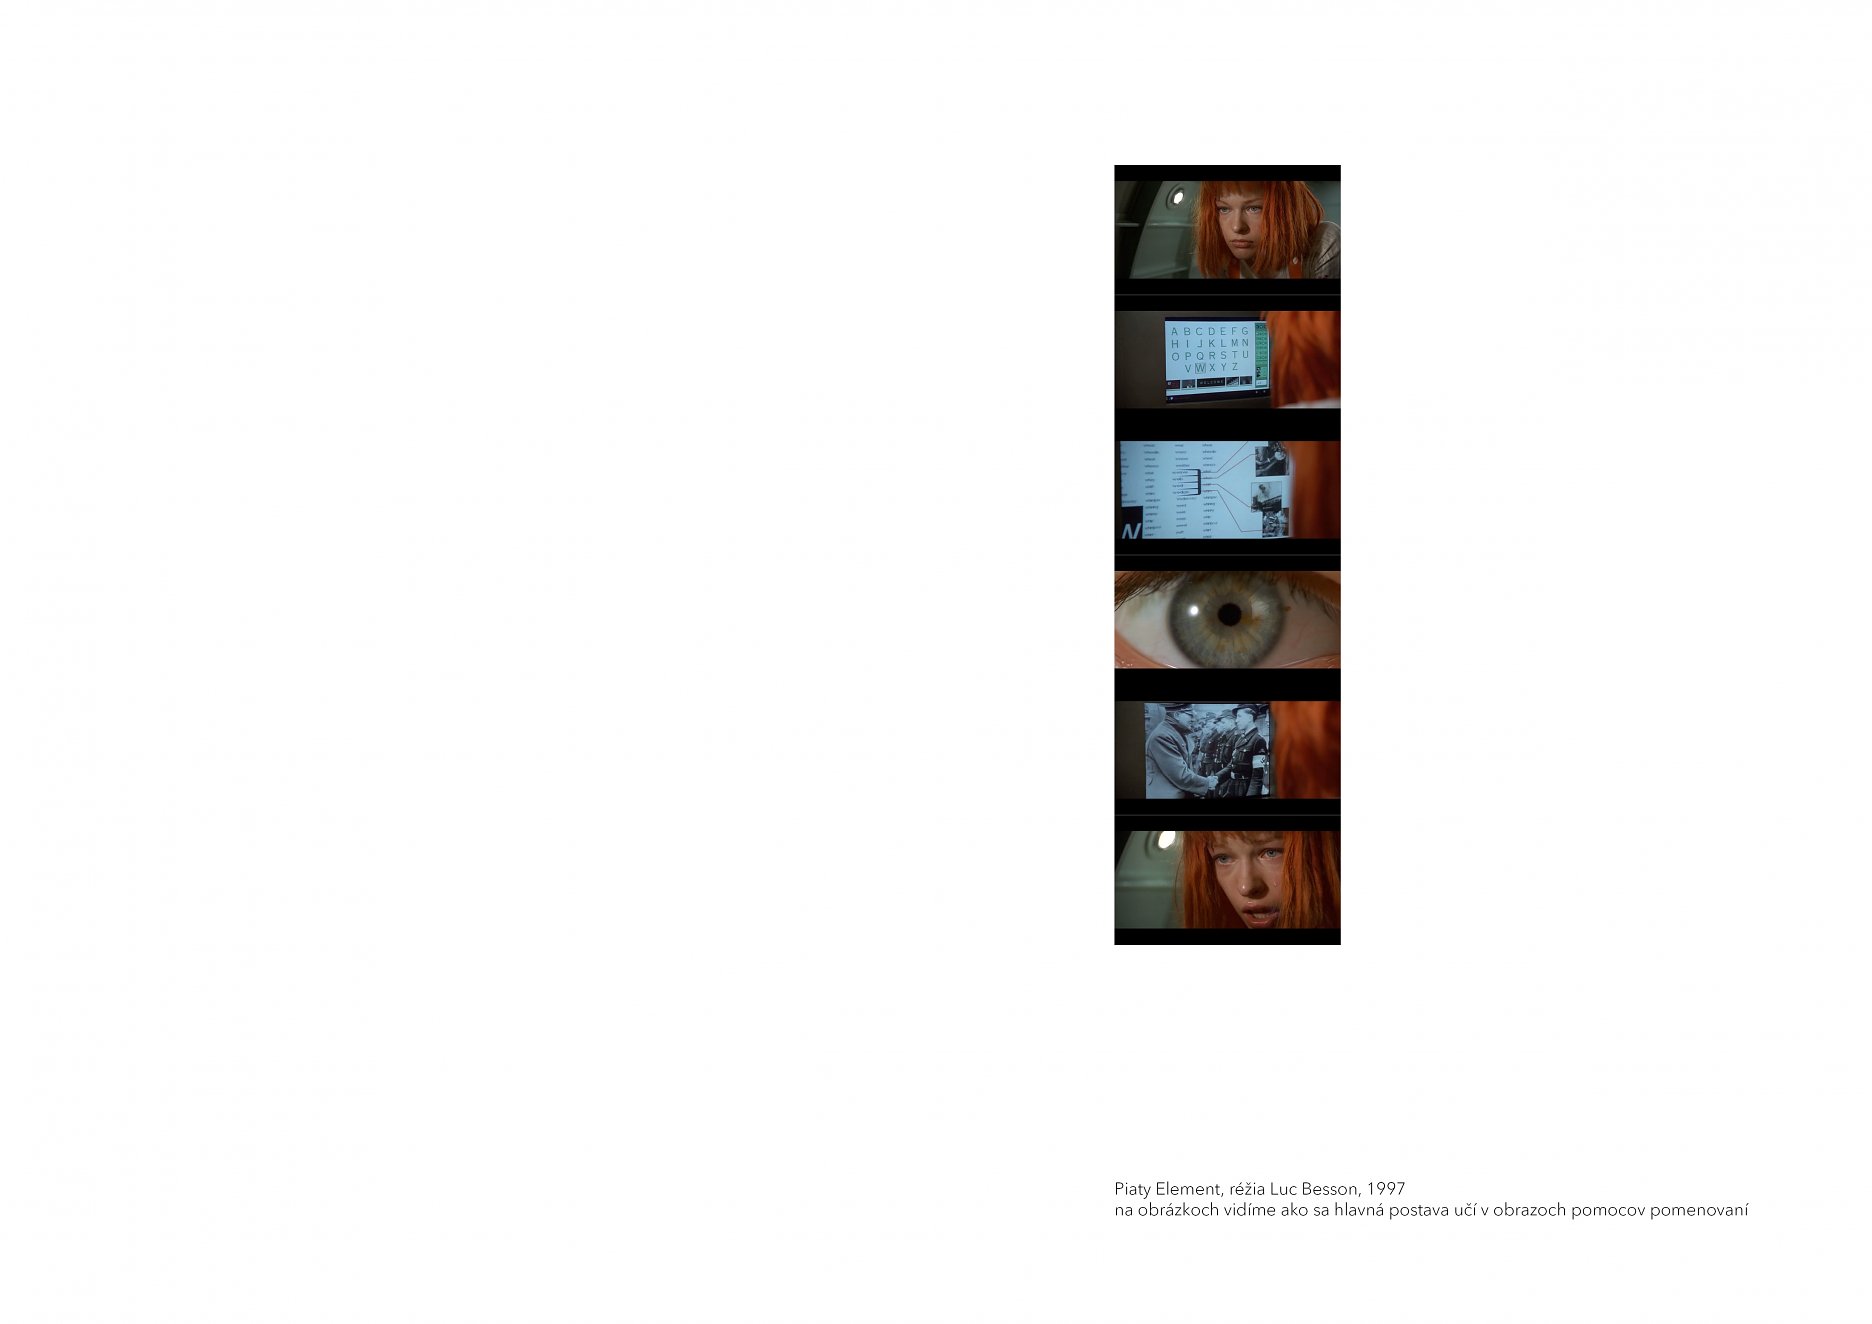 Piaty Element, réžia Luc Besson, 1997 na obrázkoch vidíme ako sa hlavná postava učí v obrazoch pomocou pomenovaní